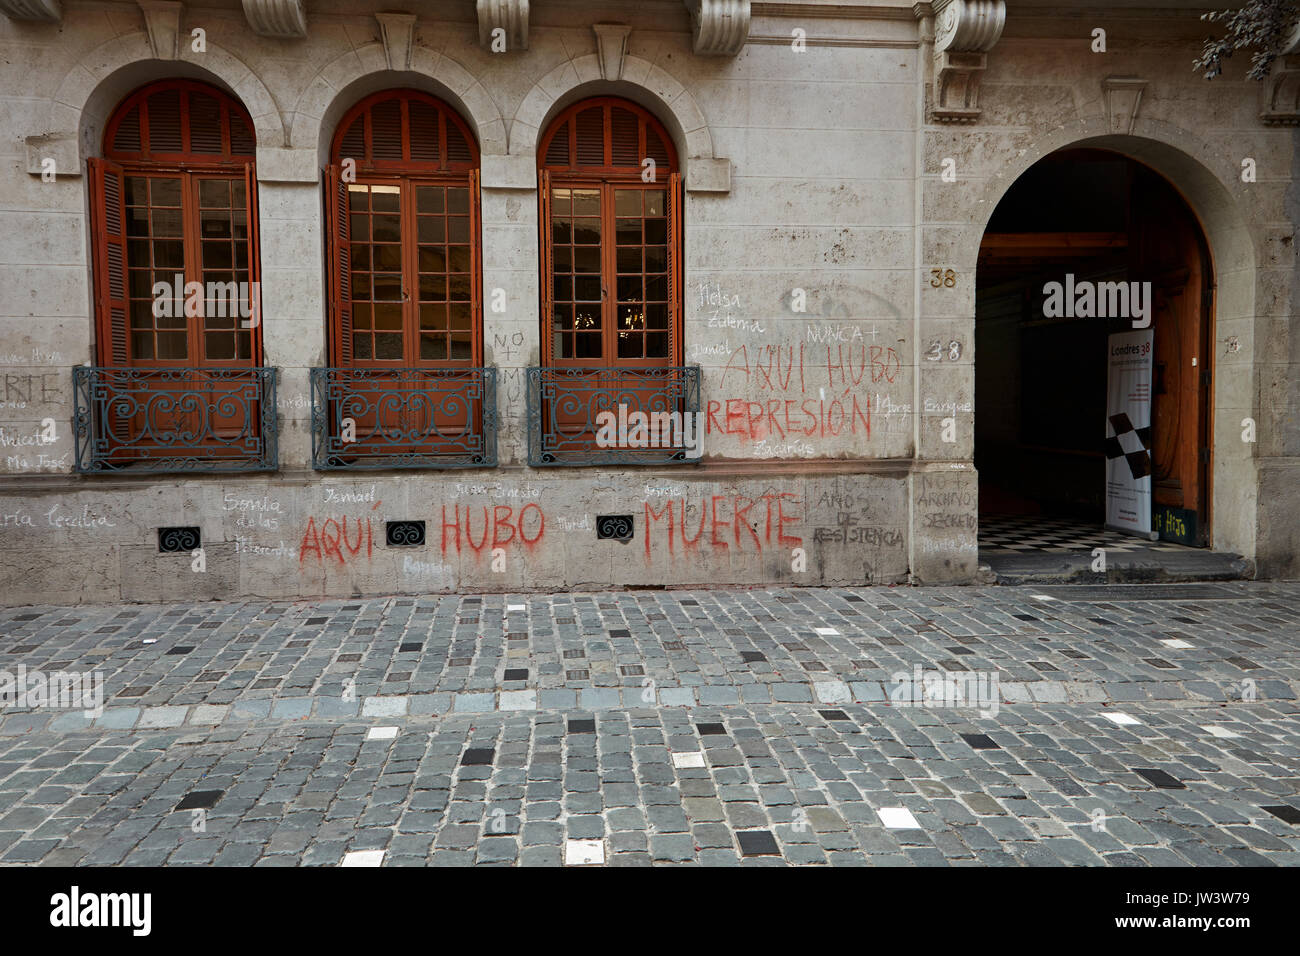 Calle Londres 38 (verwendet für Folter und Mord unter dem Pinochet-regime), Barrio Paris-Londres, Santiago, Chile, Südamerika Stockfoto